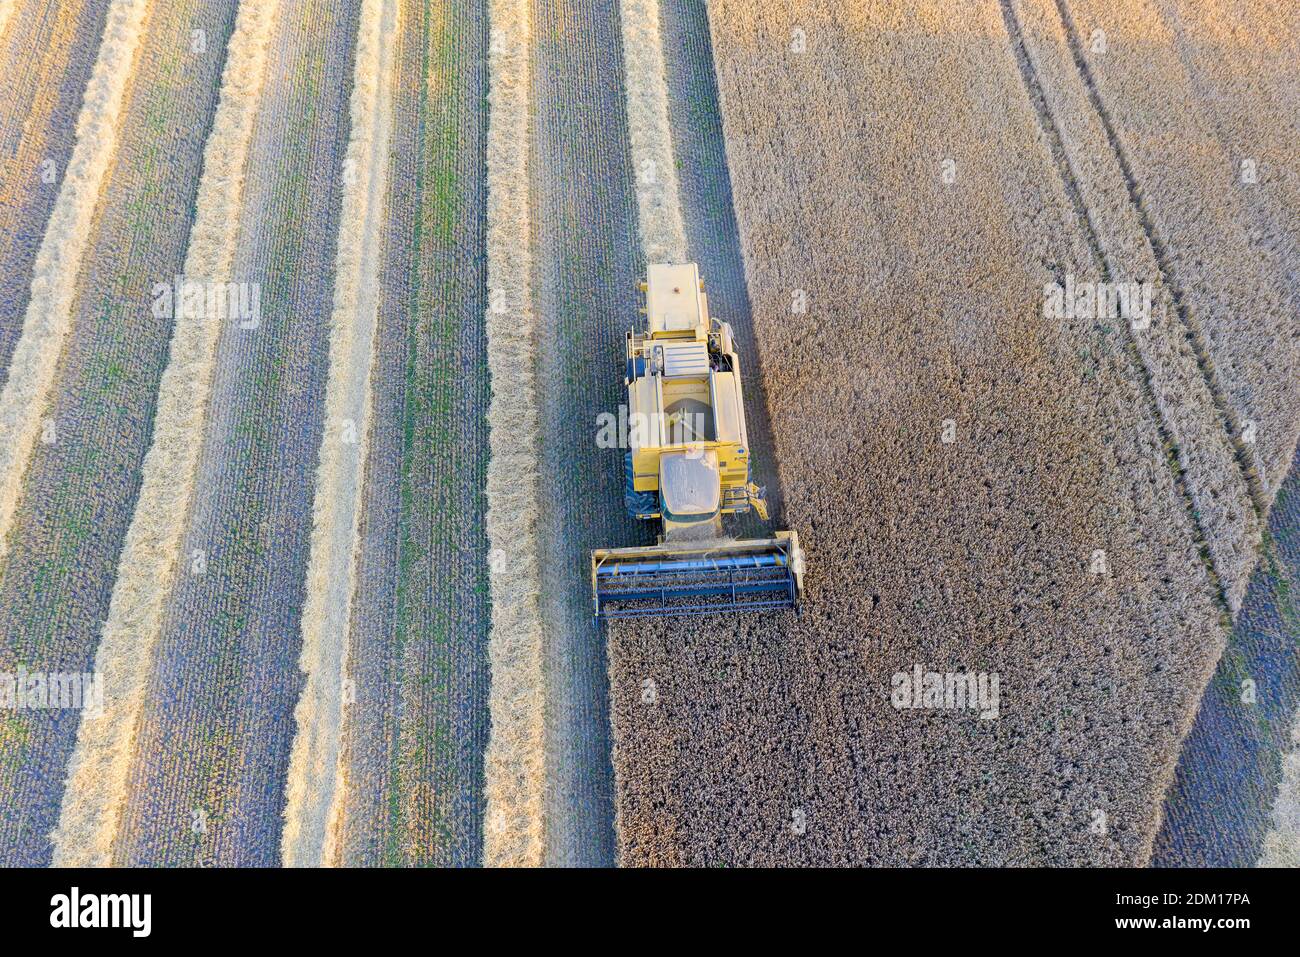 Mietitrebbiatrice e un trattore che raccoglie il grano su un campo, Jutland, Danimarca. Foto Stock